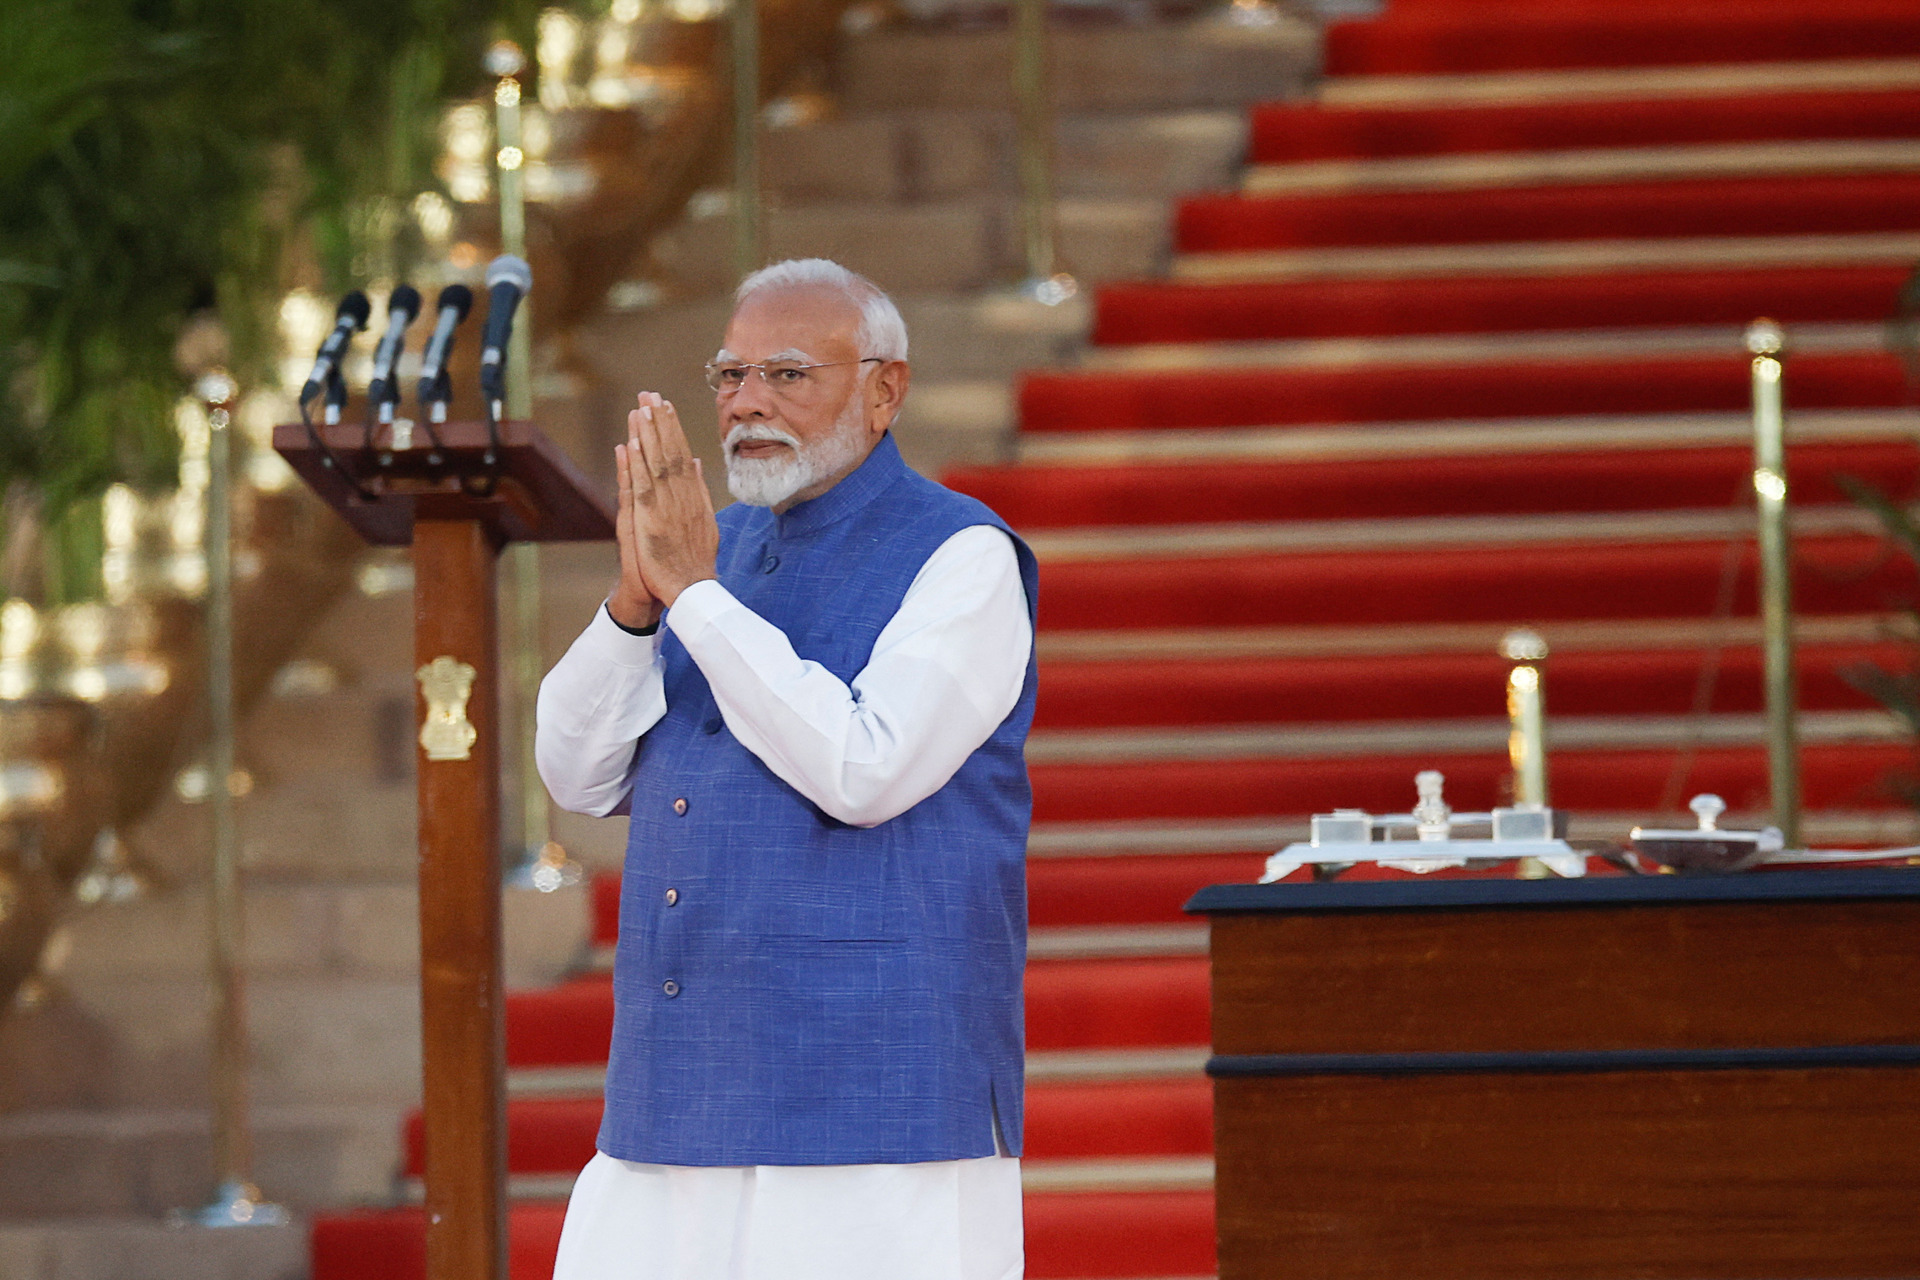 莫迪第三度宣誓任印度总理  政治版图变化加剧挑战